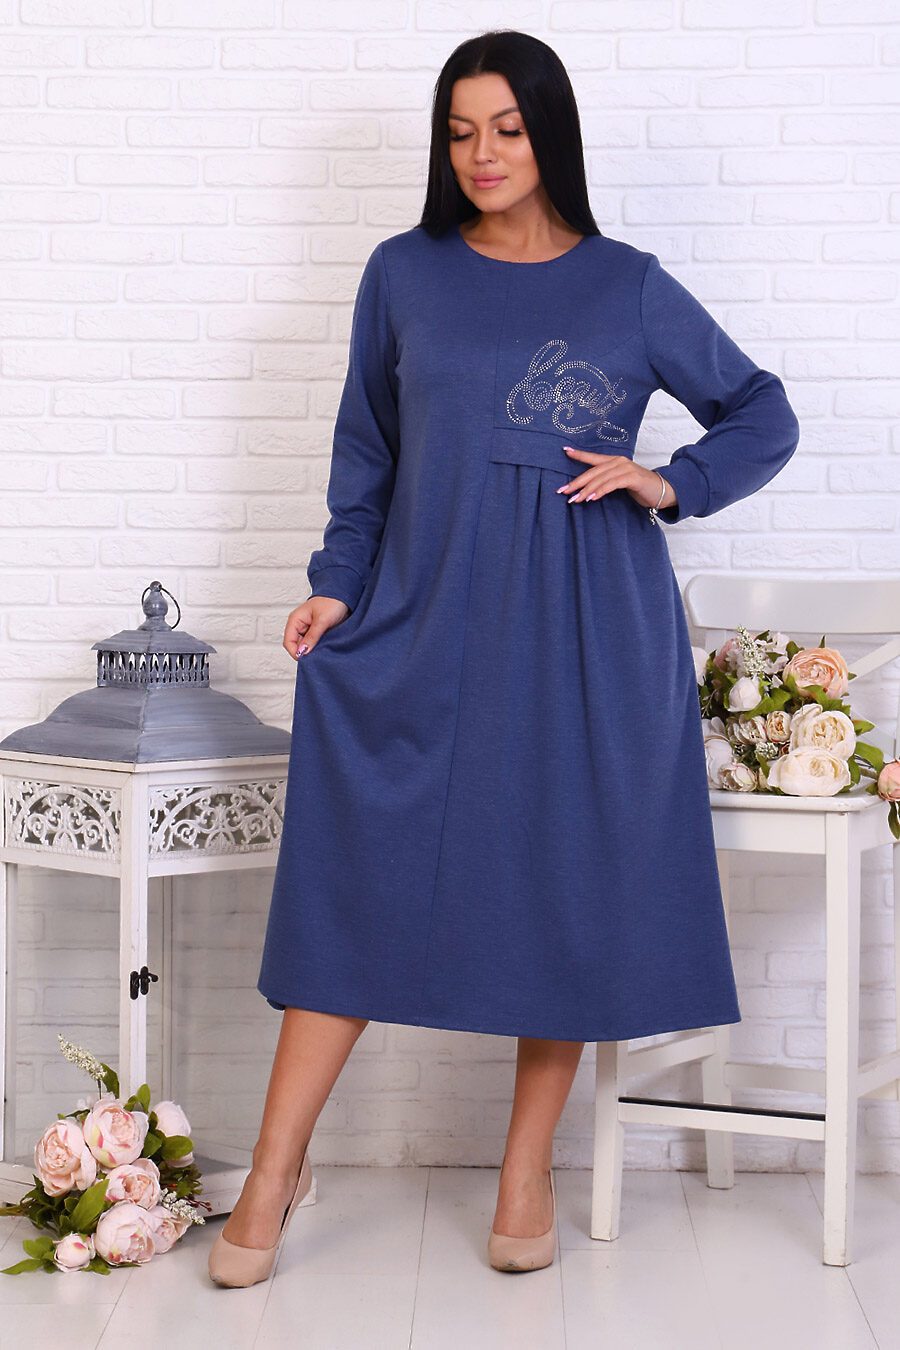 Платье 31567 для женщин НАТАЛИ 719194 купить оптом от производителя. Совместная покупка женской одежды в OptMoyo